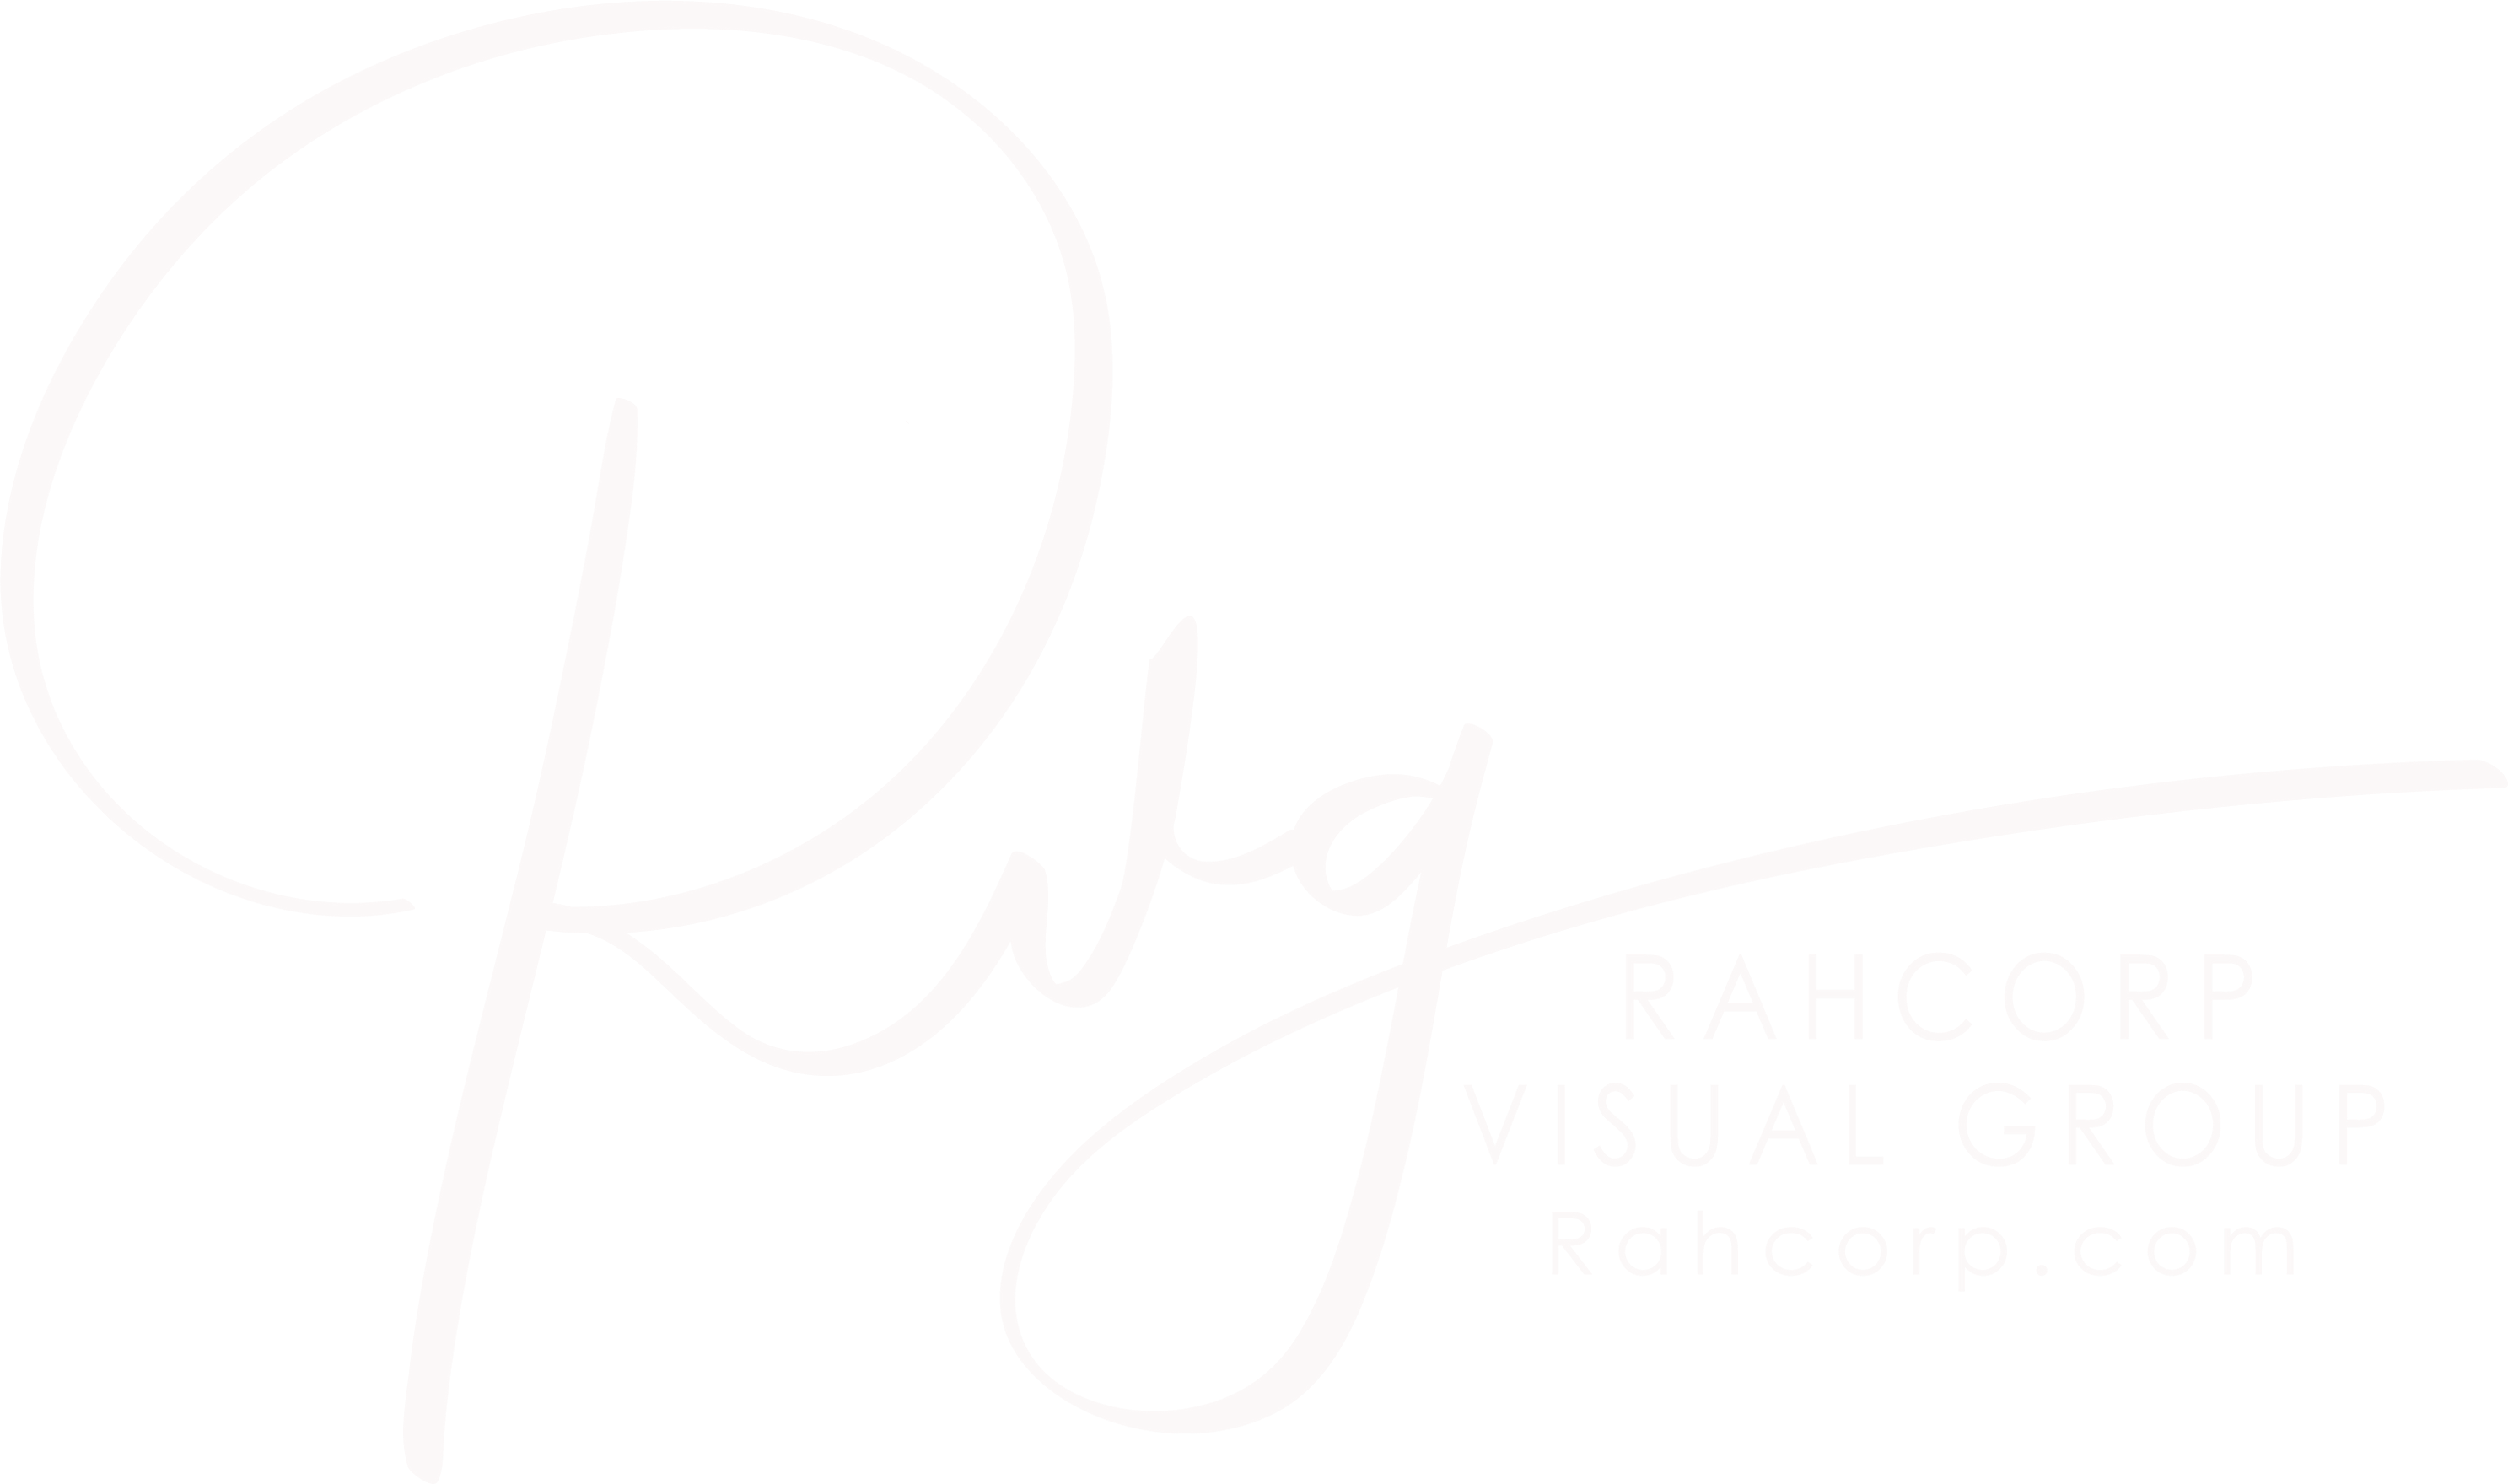 Rahcorp Visual Group